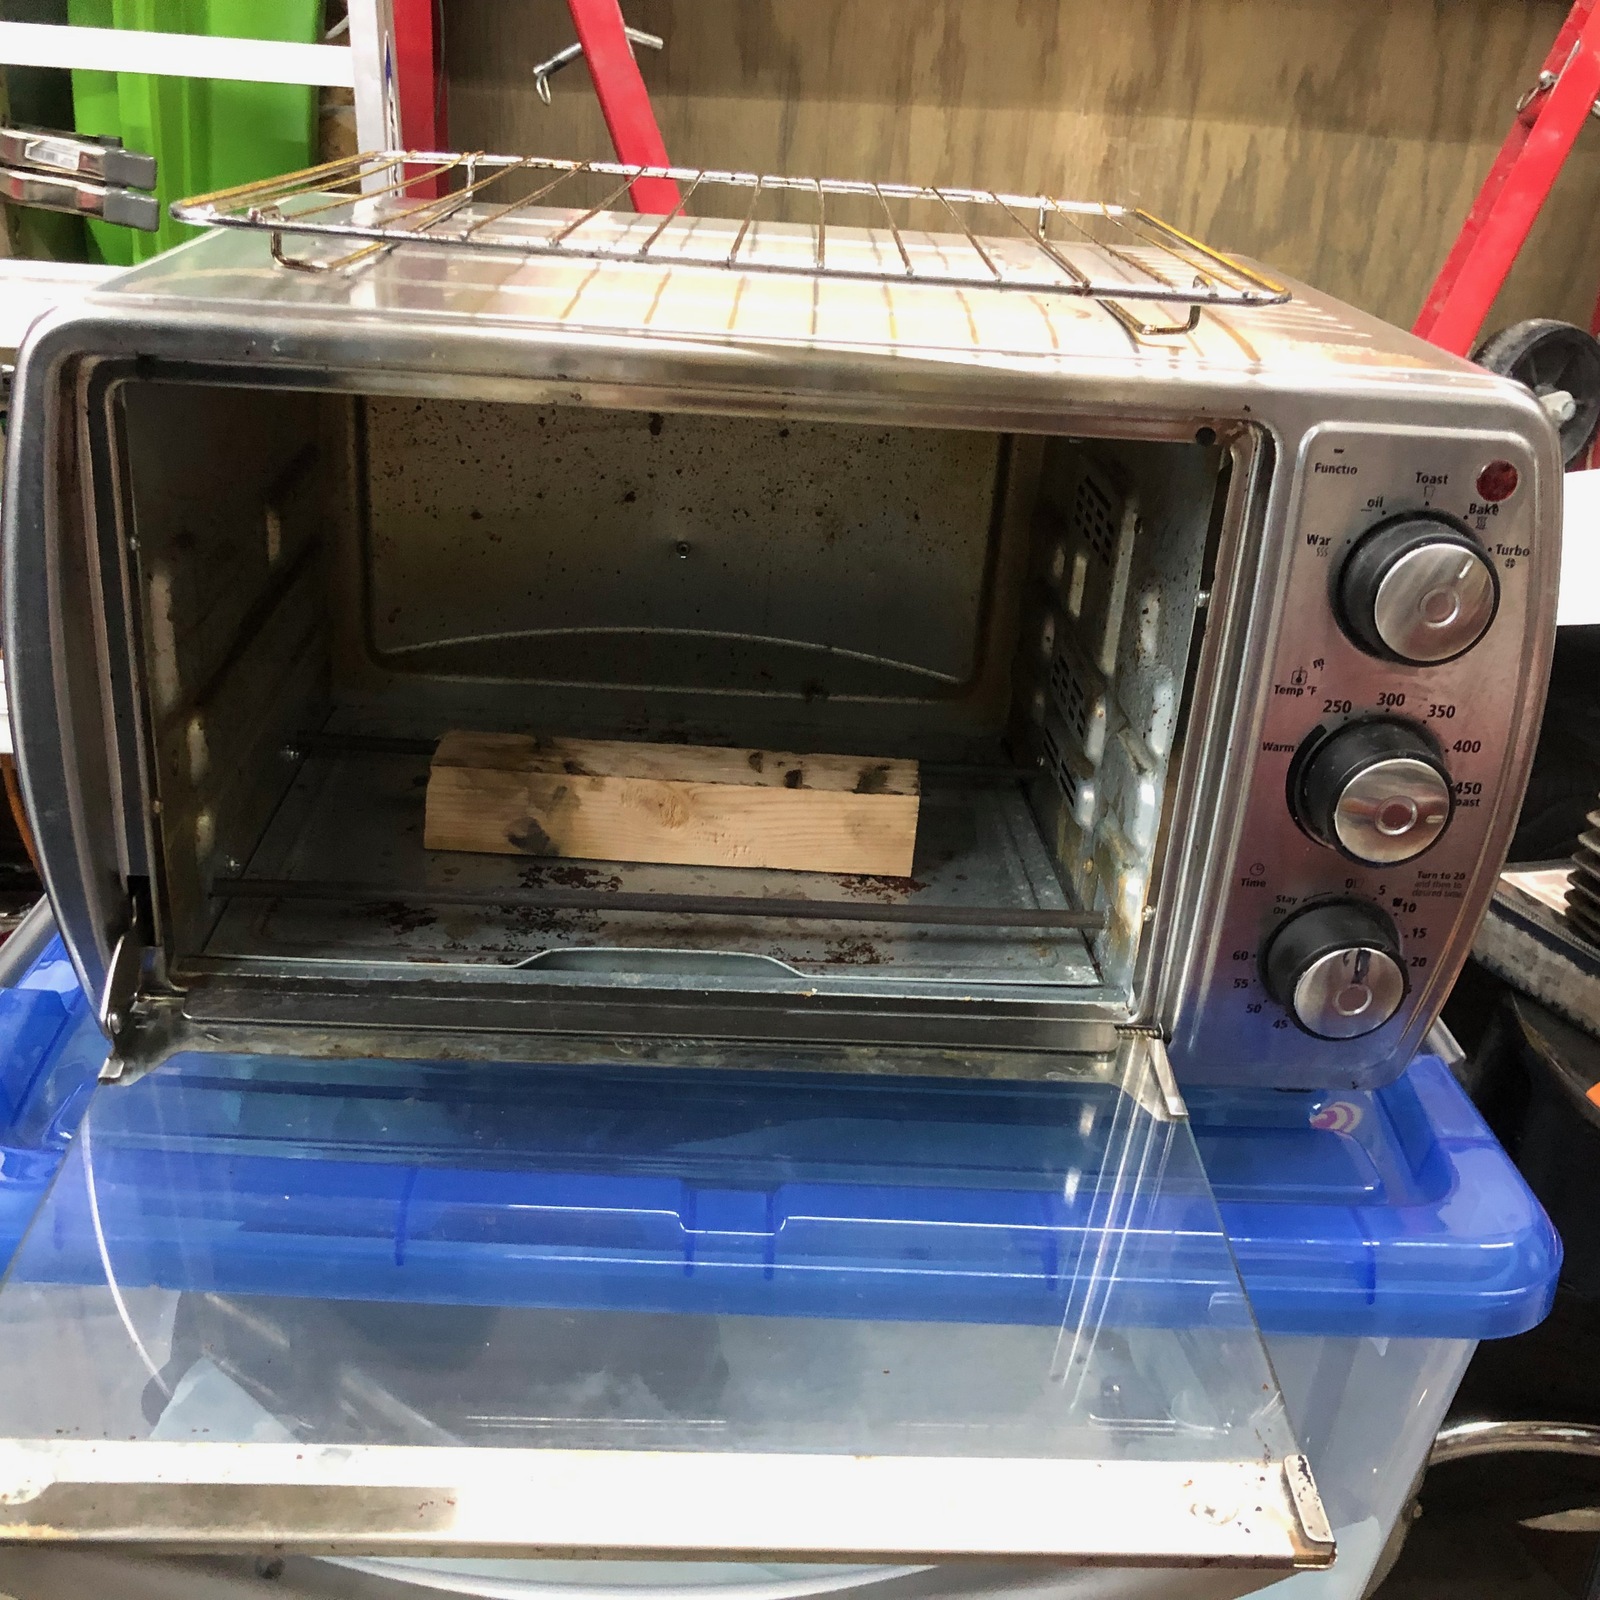 Easy-Bake Oven!